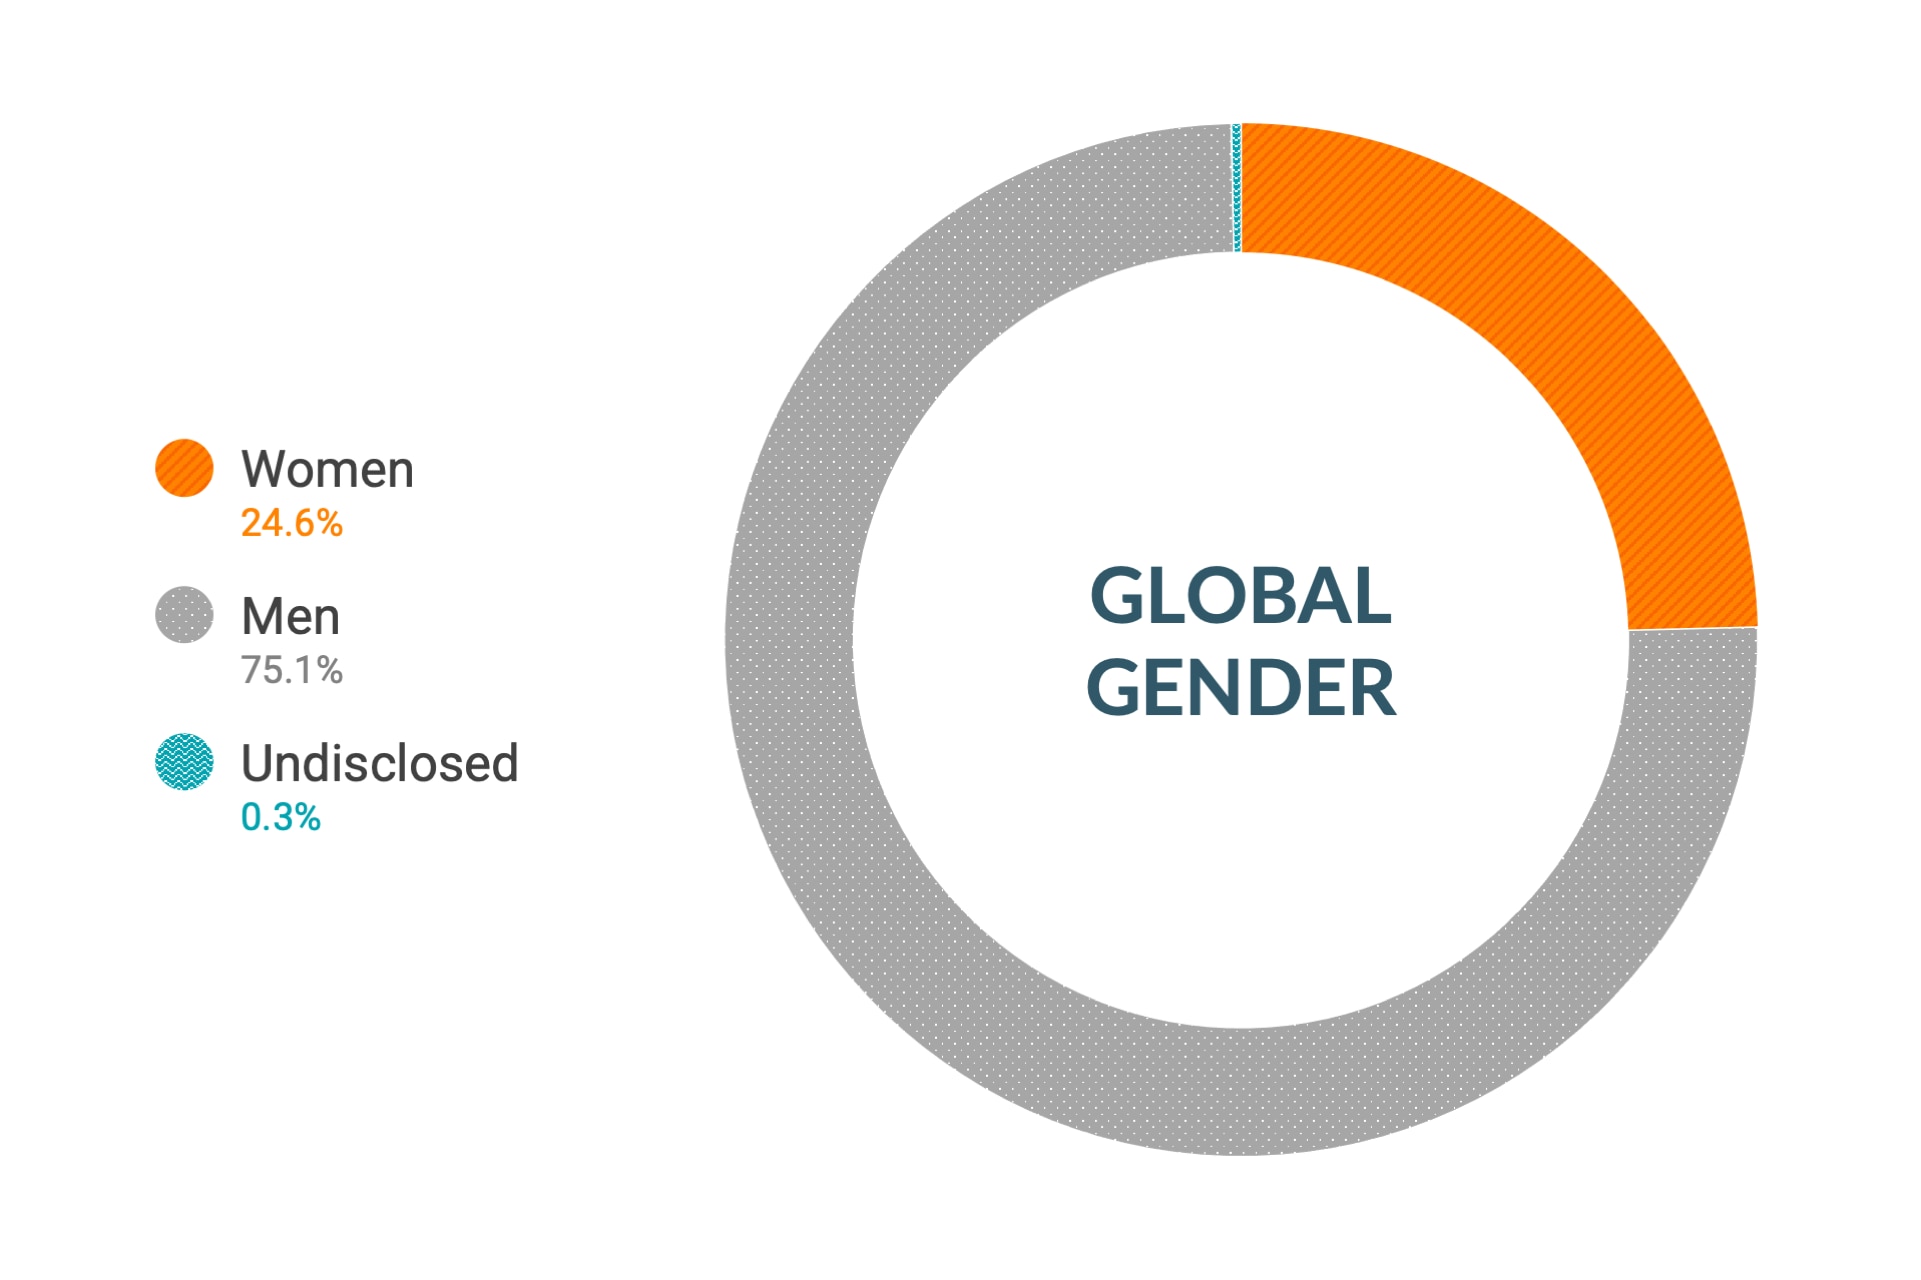 Cloudera のダイバーシティとインクルージョンデータ (世界全体の性別比): 女性25.8%、男性73.9%、回答なし0.3%